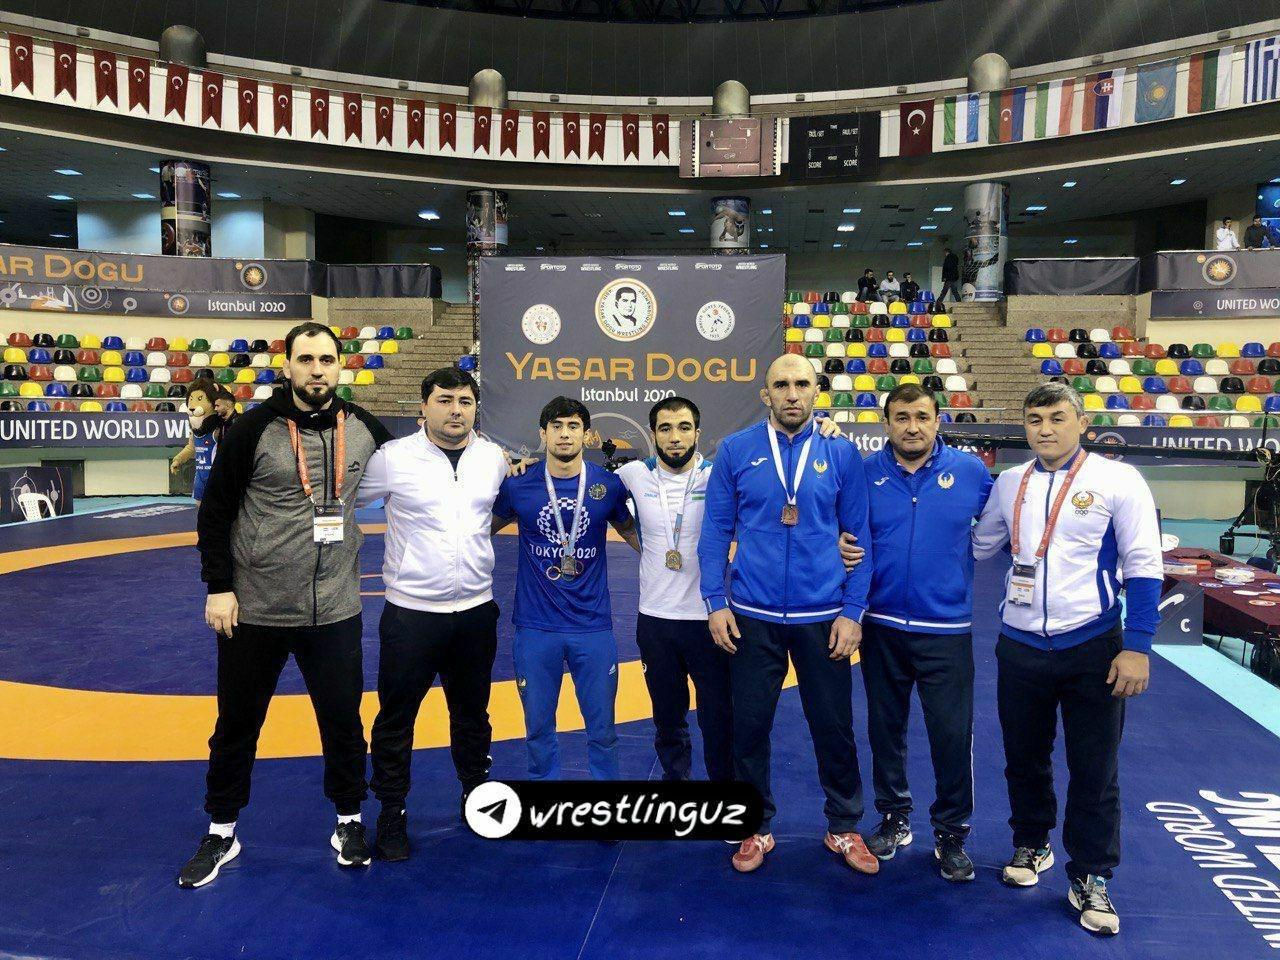 Абдуллаев Гулям занимает второе место на международном турнире по вольной борьбе среди взрослых в Стамбуле, Турция.